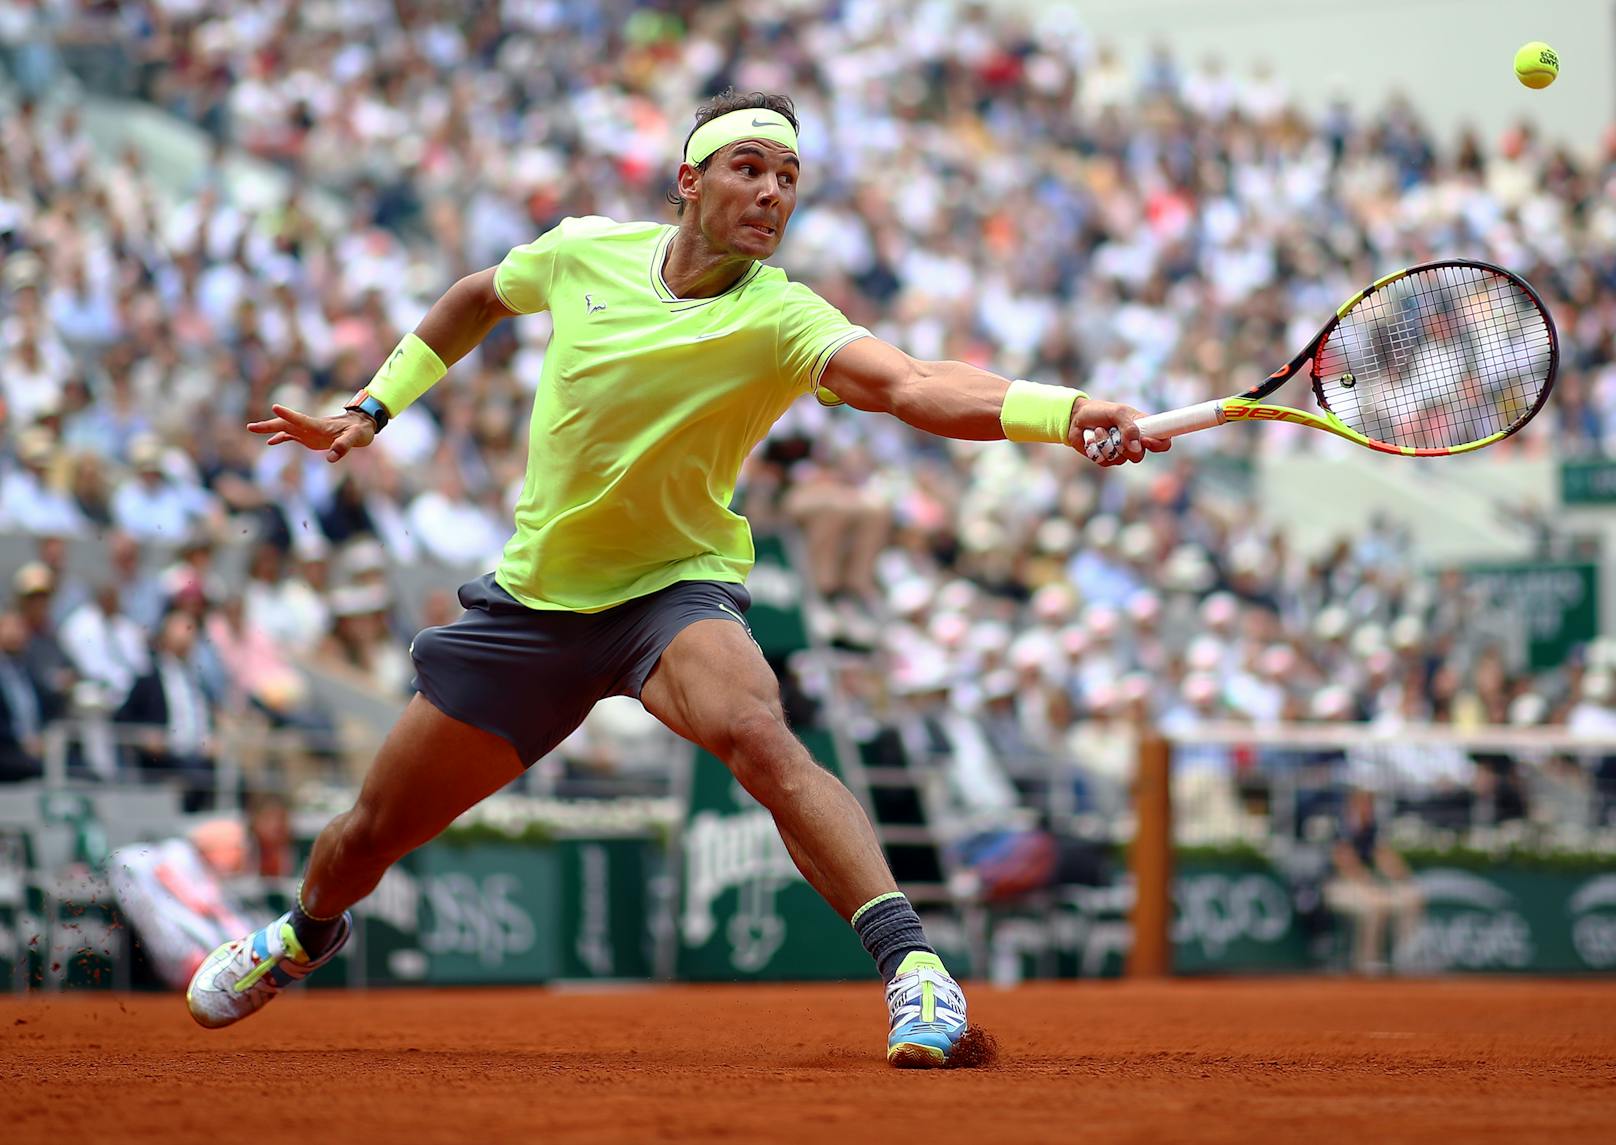 Nadal gewann bisher 19 Grand-Slam-Titel im Einzel und liegt damit auf Platz 2 der Rekordliste hinter Roger Federer.